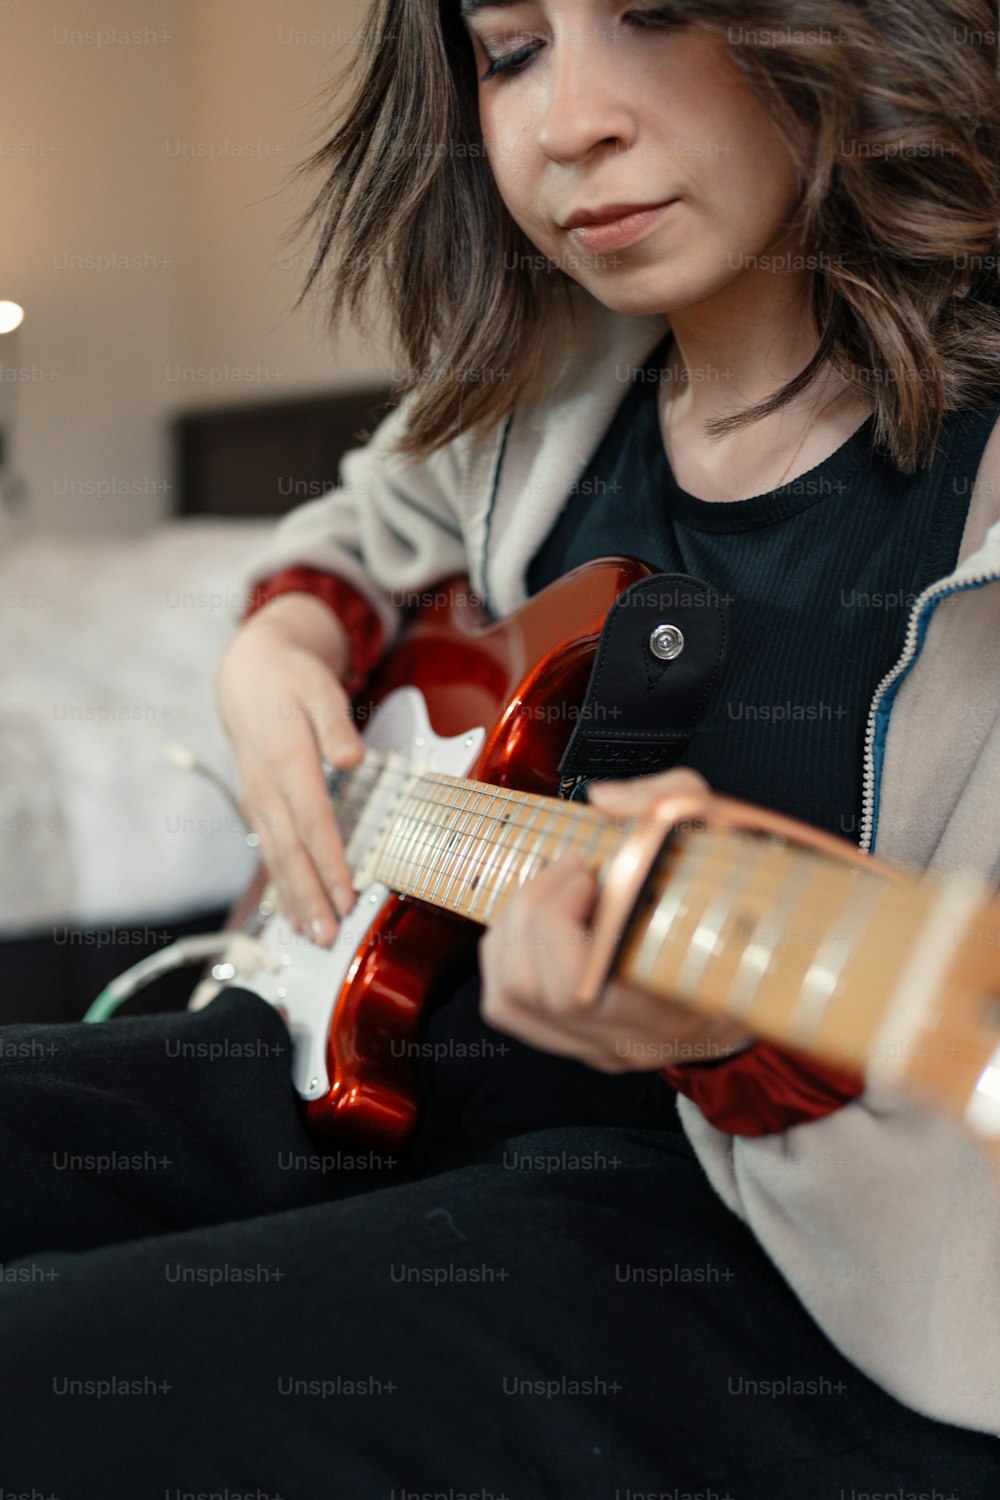 uma mulher sentada em uma cama tocando uma guitarra